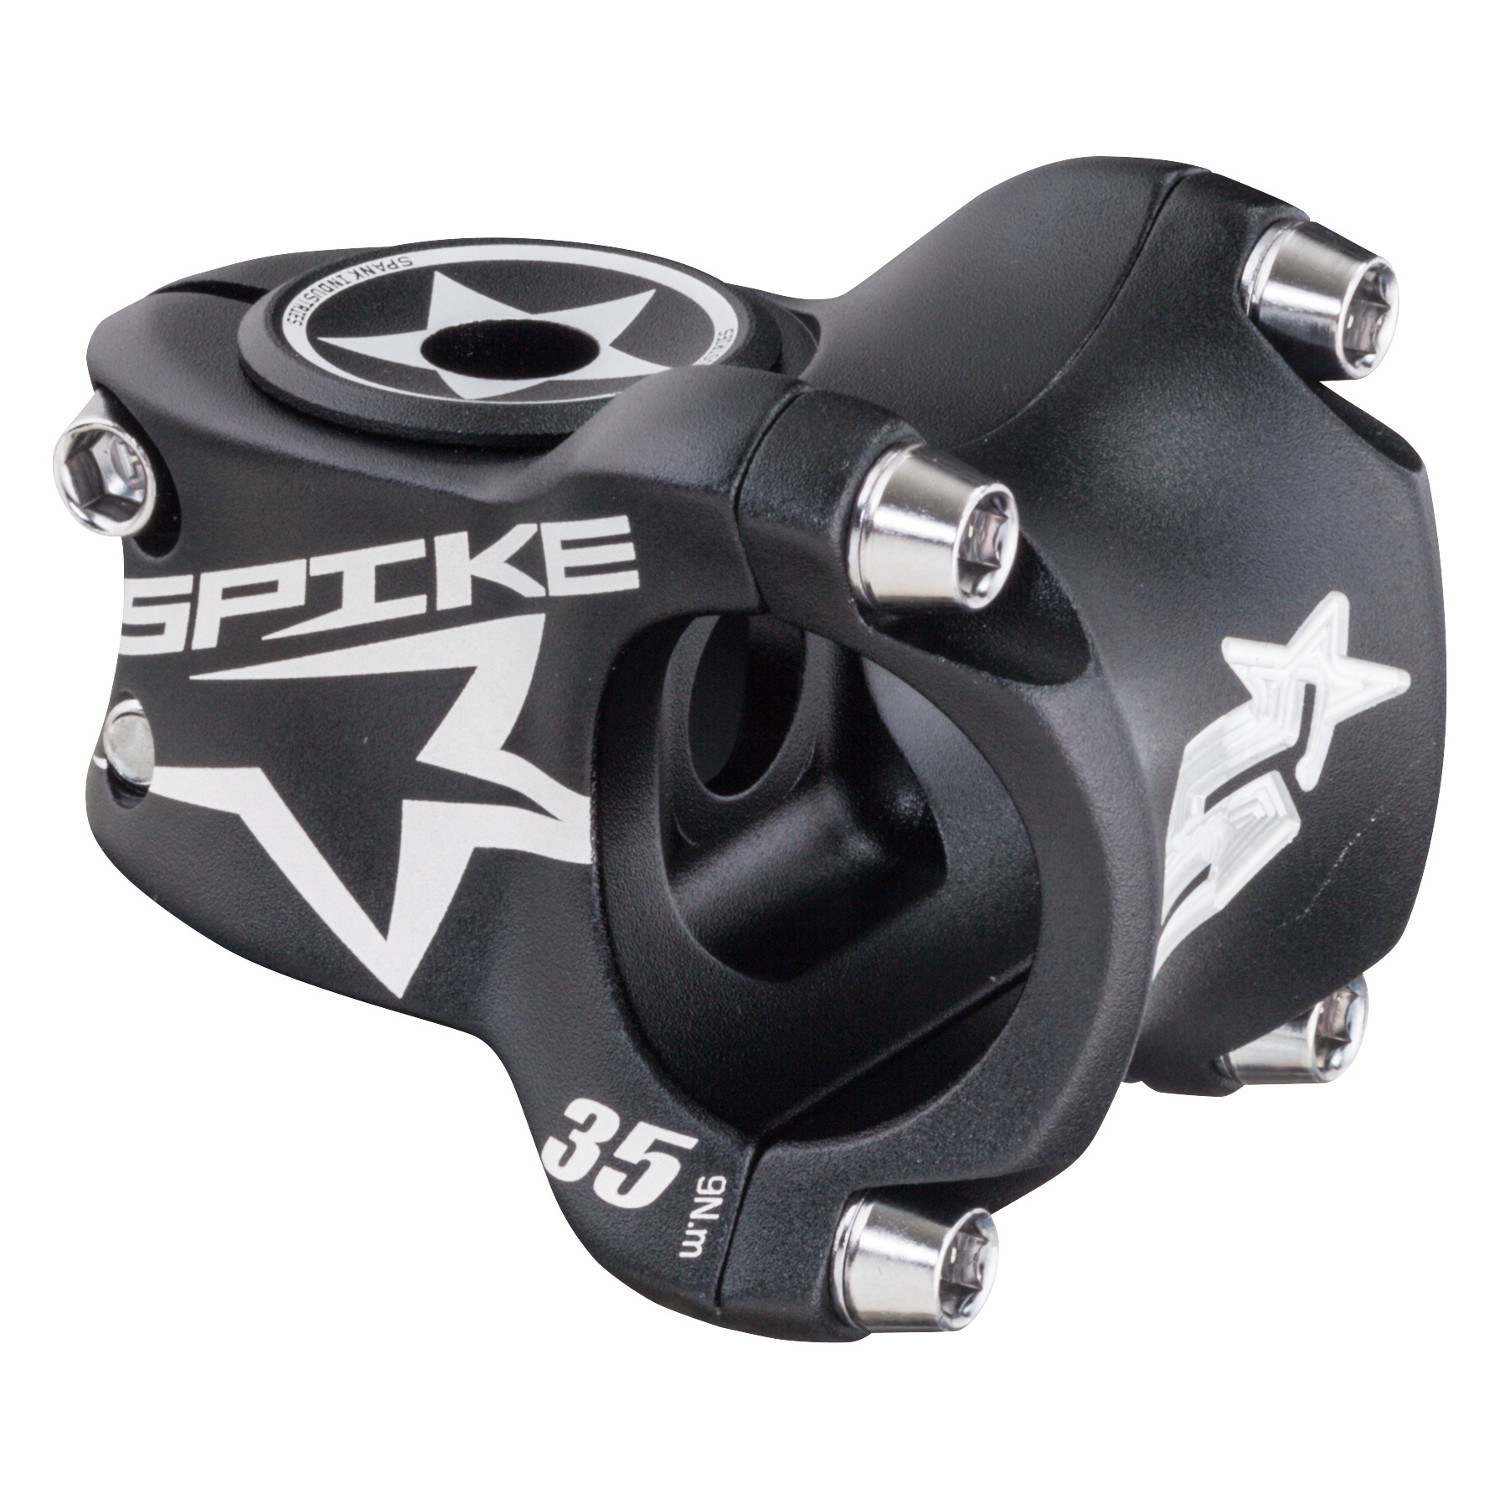 Spank Potence VTT Spike Race Black, Shotpeen, 31.8 mm, 35 mm